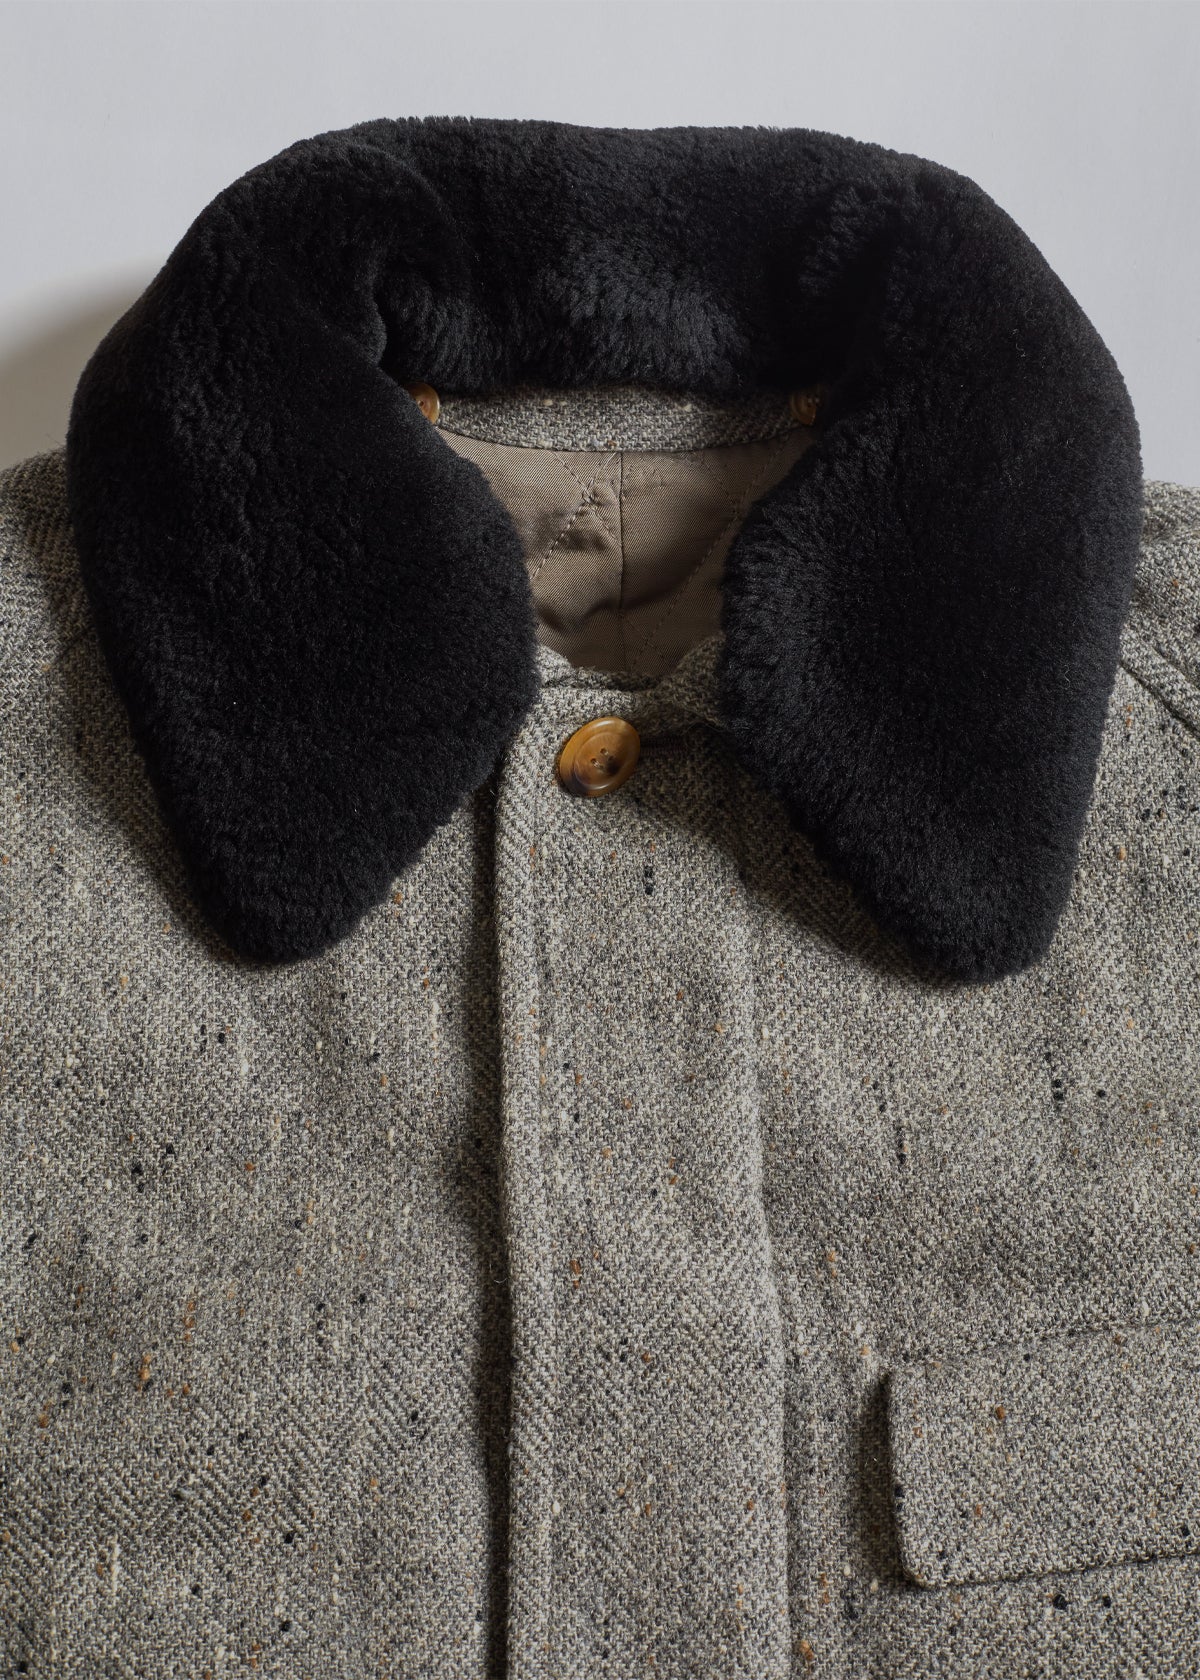 Herringbone Tweed Coat 1980's - Medium - The Archivist Store